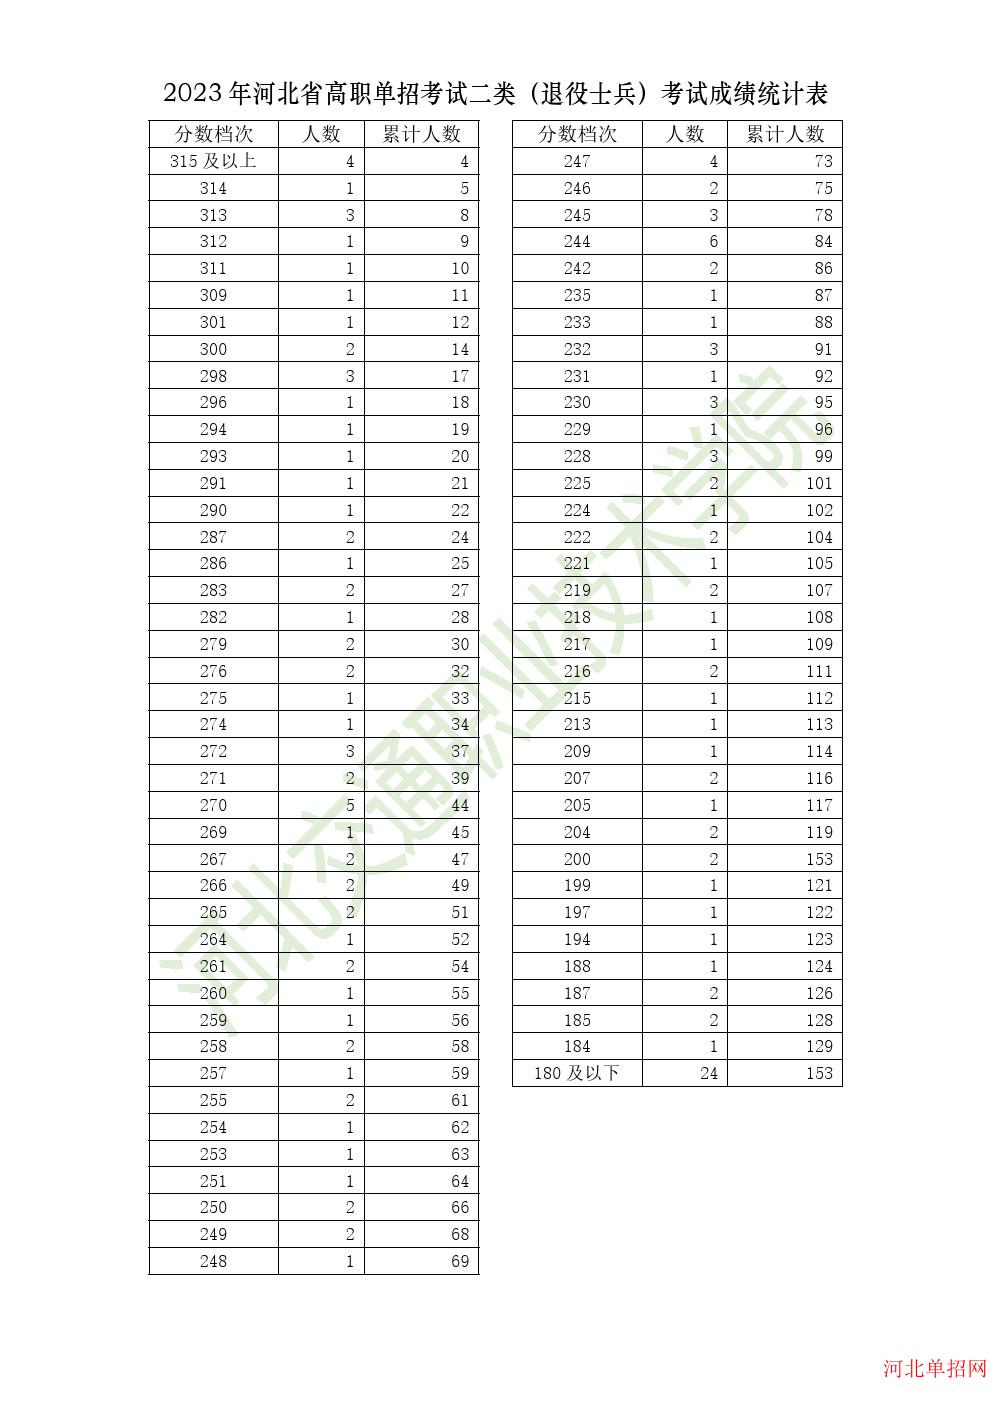 2023年河北省高职单招考试二类（退役士兵）一分一档表 图1